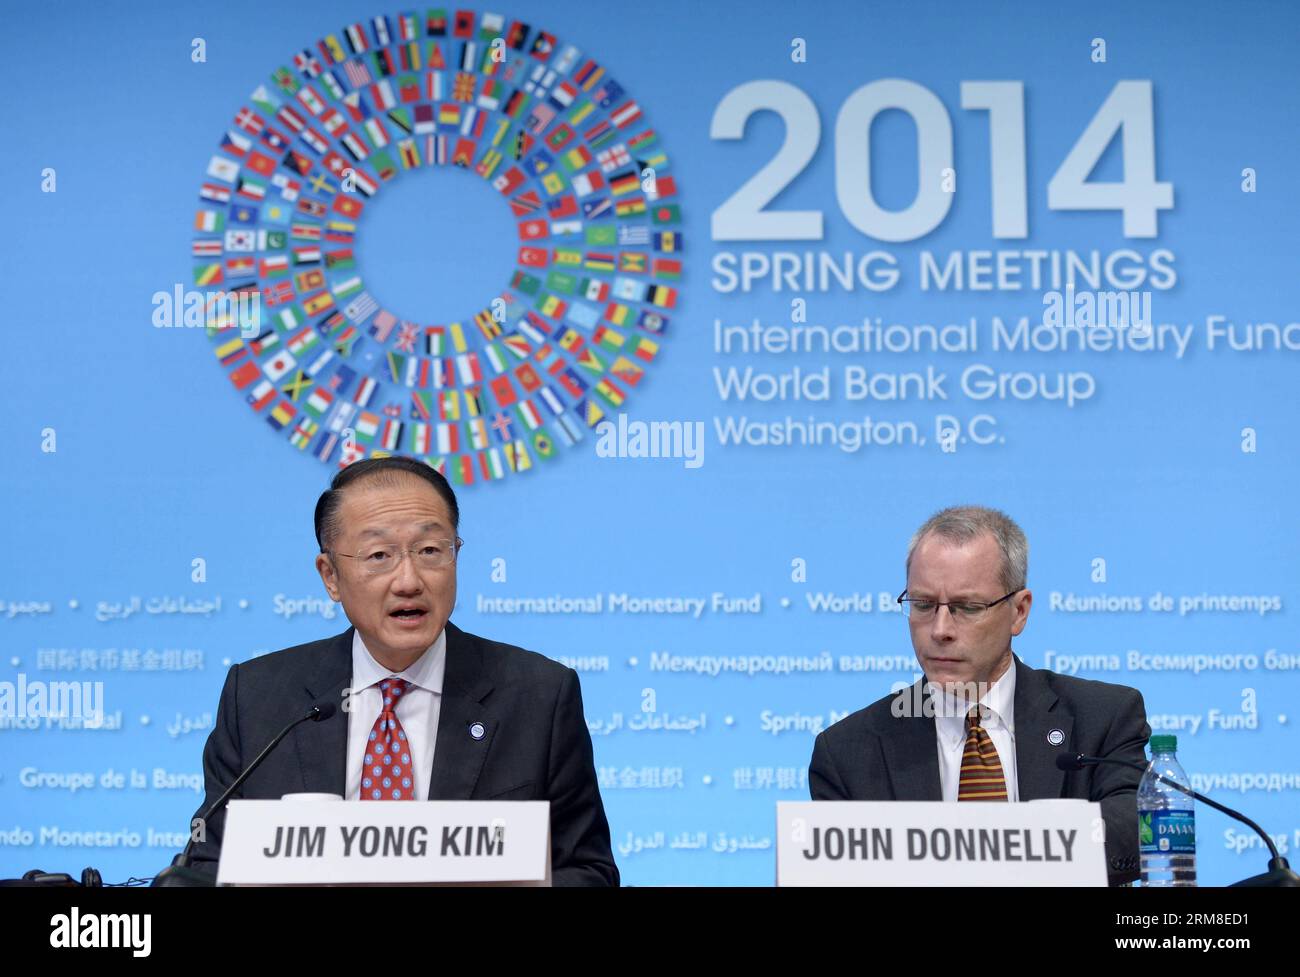 WASHINGTON D.C., el Presidente del Banco Mundial, Jim Yong Kim (izq.), habla en una conferencia de prensa antes de las reuniones de primavera del FMI y el Banco Mundial para publicar un informe en la sede del FMI en Washington D.C., capital de Estados Unidos, el 10 de abril de 2014. Para reducir la pobreza, los países necesitan mejorar el crecimiento con políticas que asignen más recursos a los pobres extremos, según el nuevo informe del Banco Mundial publicado el jueves (Xinhua/Yin Bogu). EE.UU.-WASHINGTON-WORLD BANK-REPORT PUBLICATIONxNOTxINxCHN WASHINGTON D C El presidente del Banco Mundial, Jim Yong Kim, habla EN una conferencia de prensa ante el FMI y la prohibición mundial Foto de stock